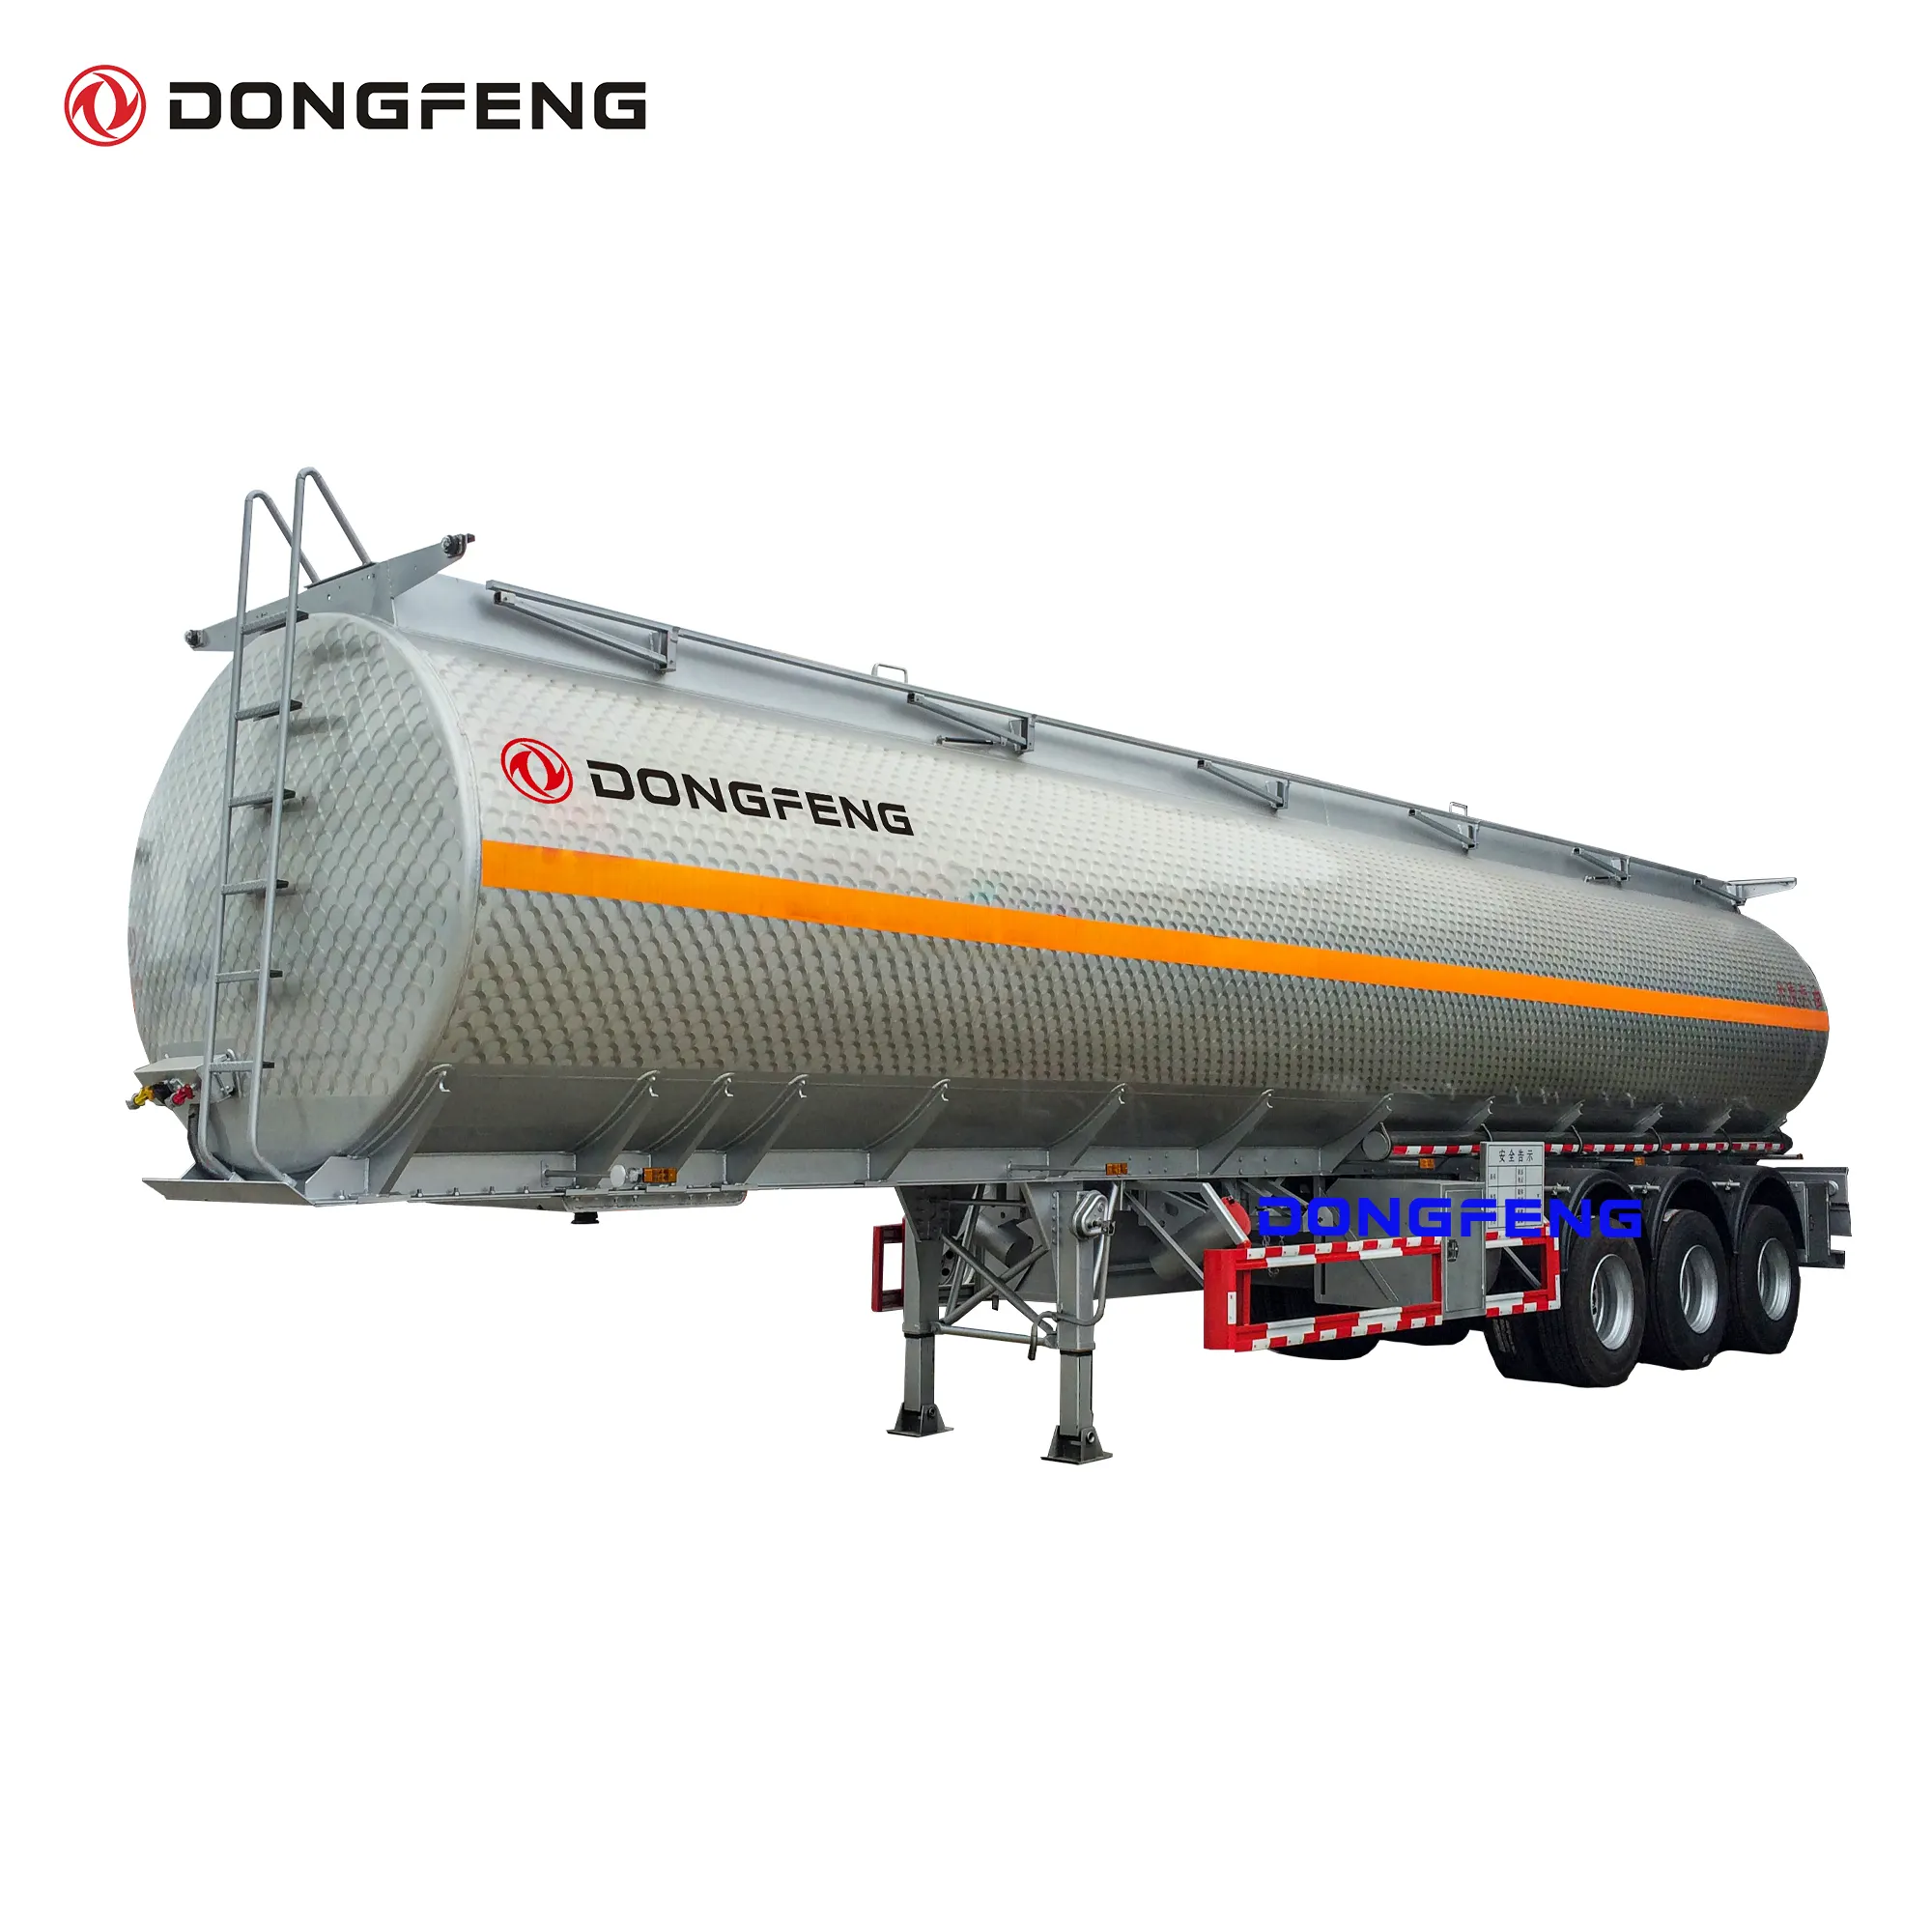 Dongfeng รถพ่วงถังน้ำมันขนาด42000ลิตร304ชนิดสแตนเลสพร้อม API มาตรฐานการโหลดและปล่อยเรือบรรทุกน้ำมันเชื้อเพลิง